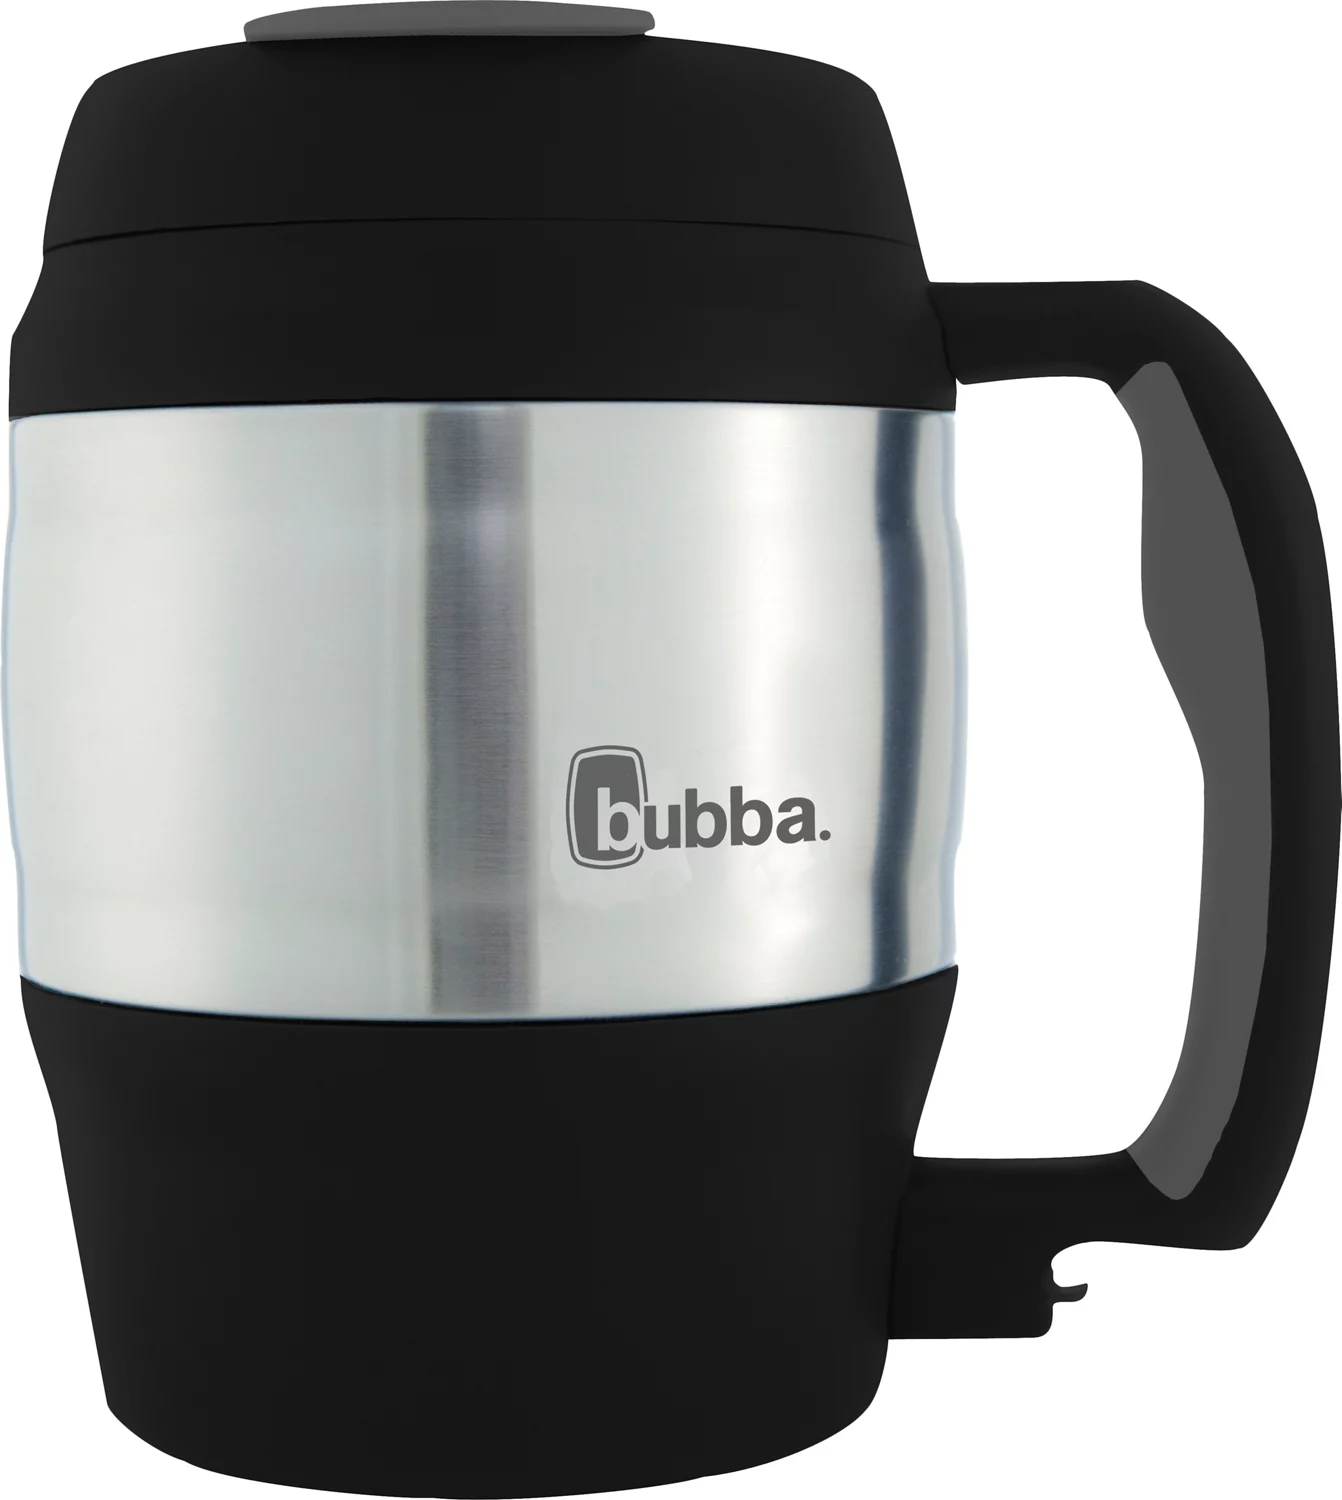 Bubba Mug